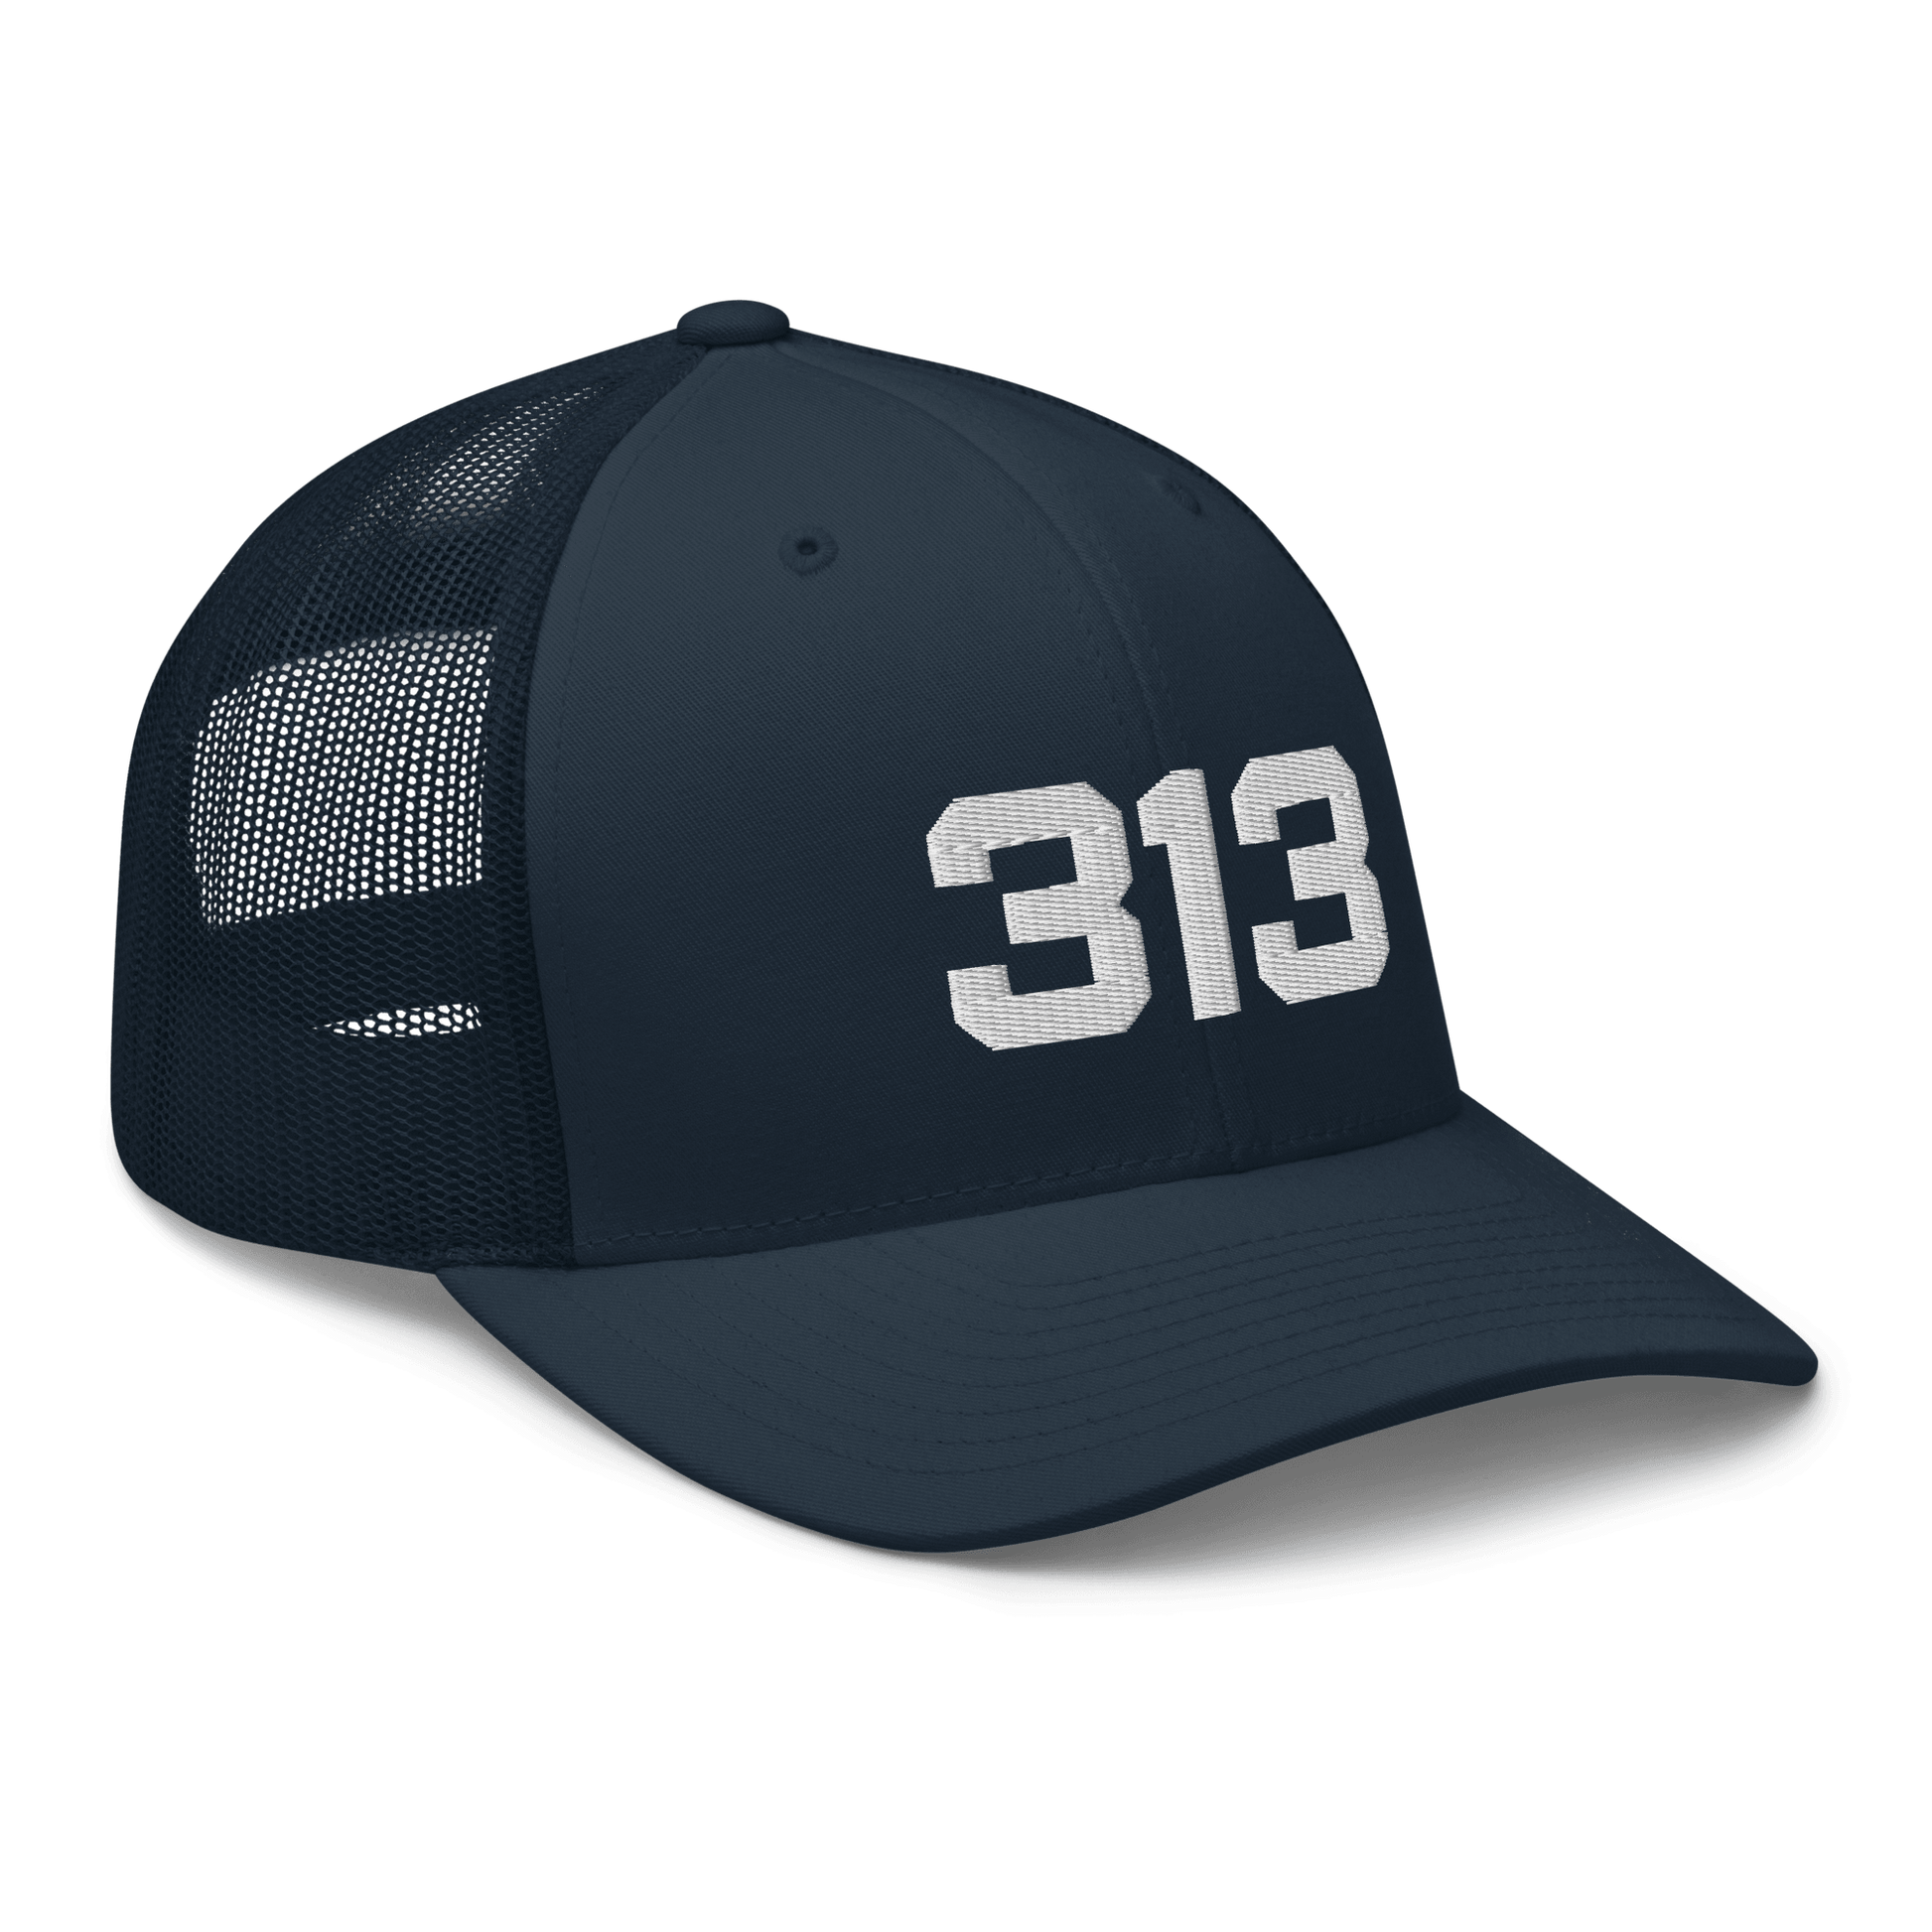 Detroit '313' Trucker Hat | White/Black Embroidery - Circumspice Michigan